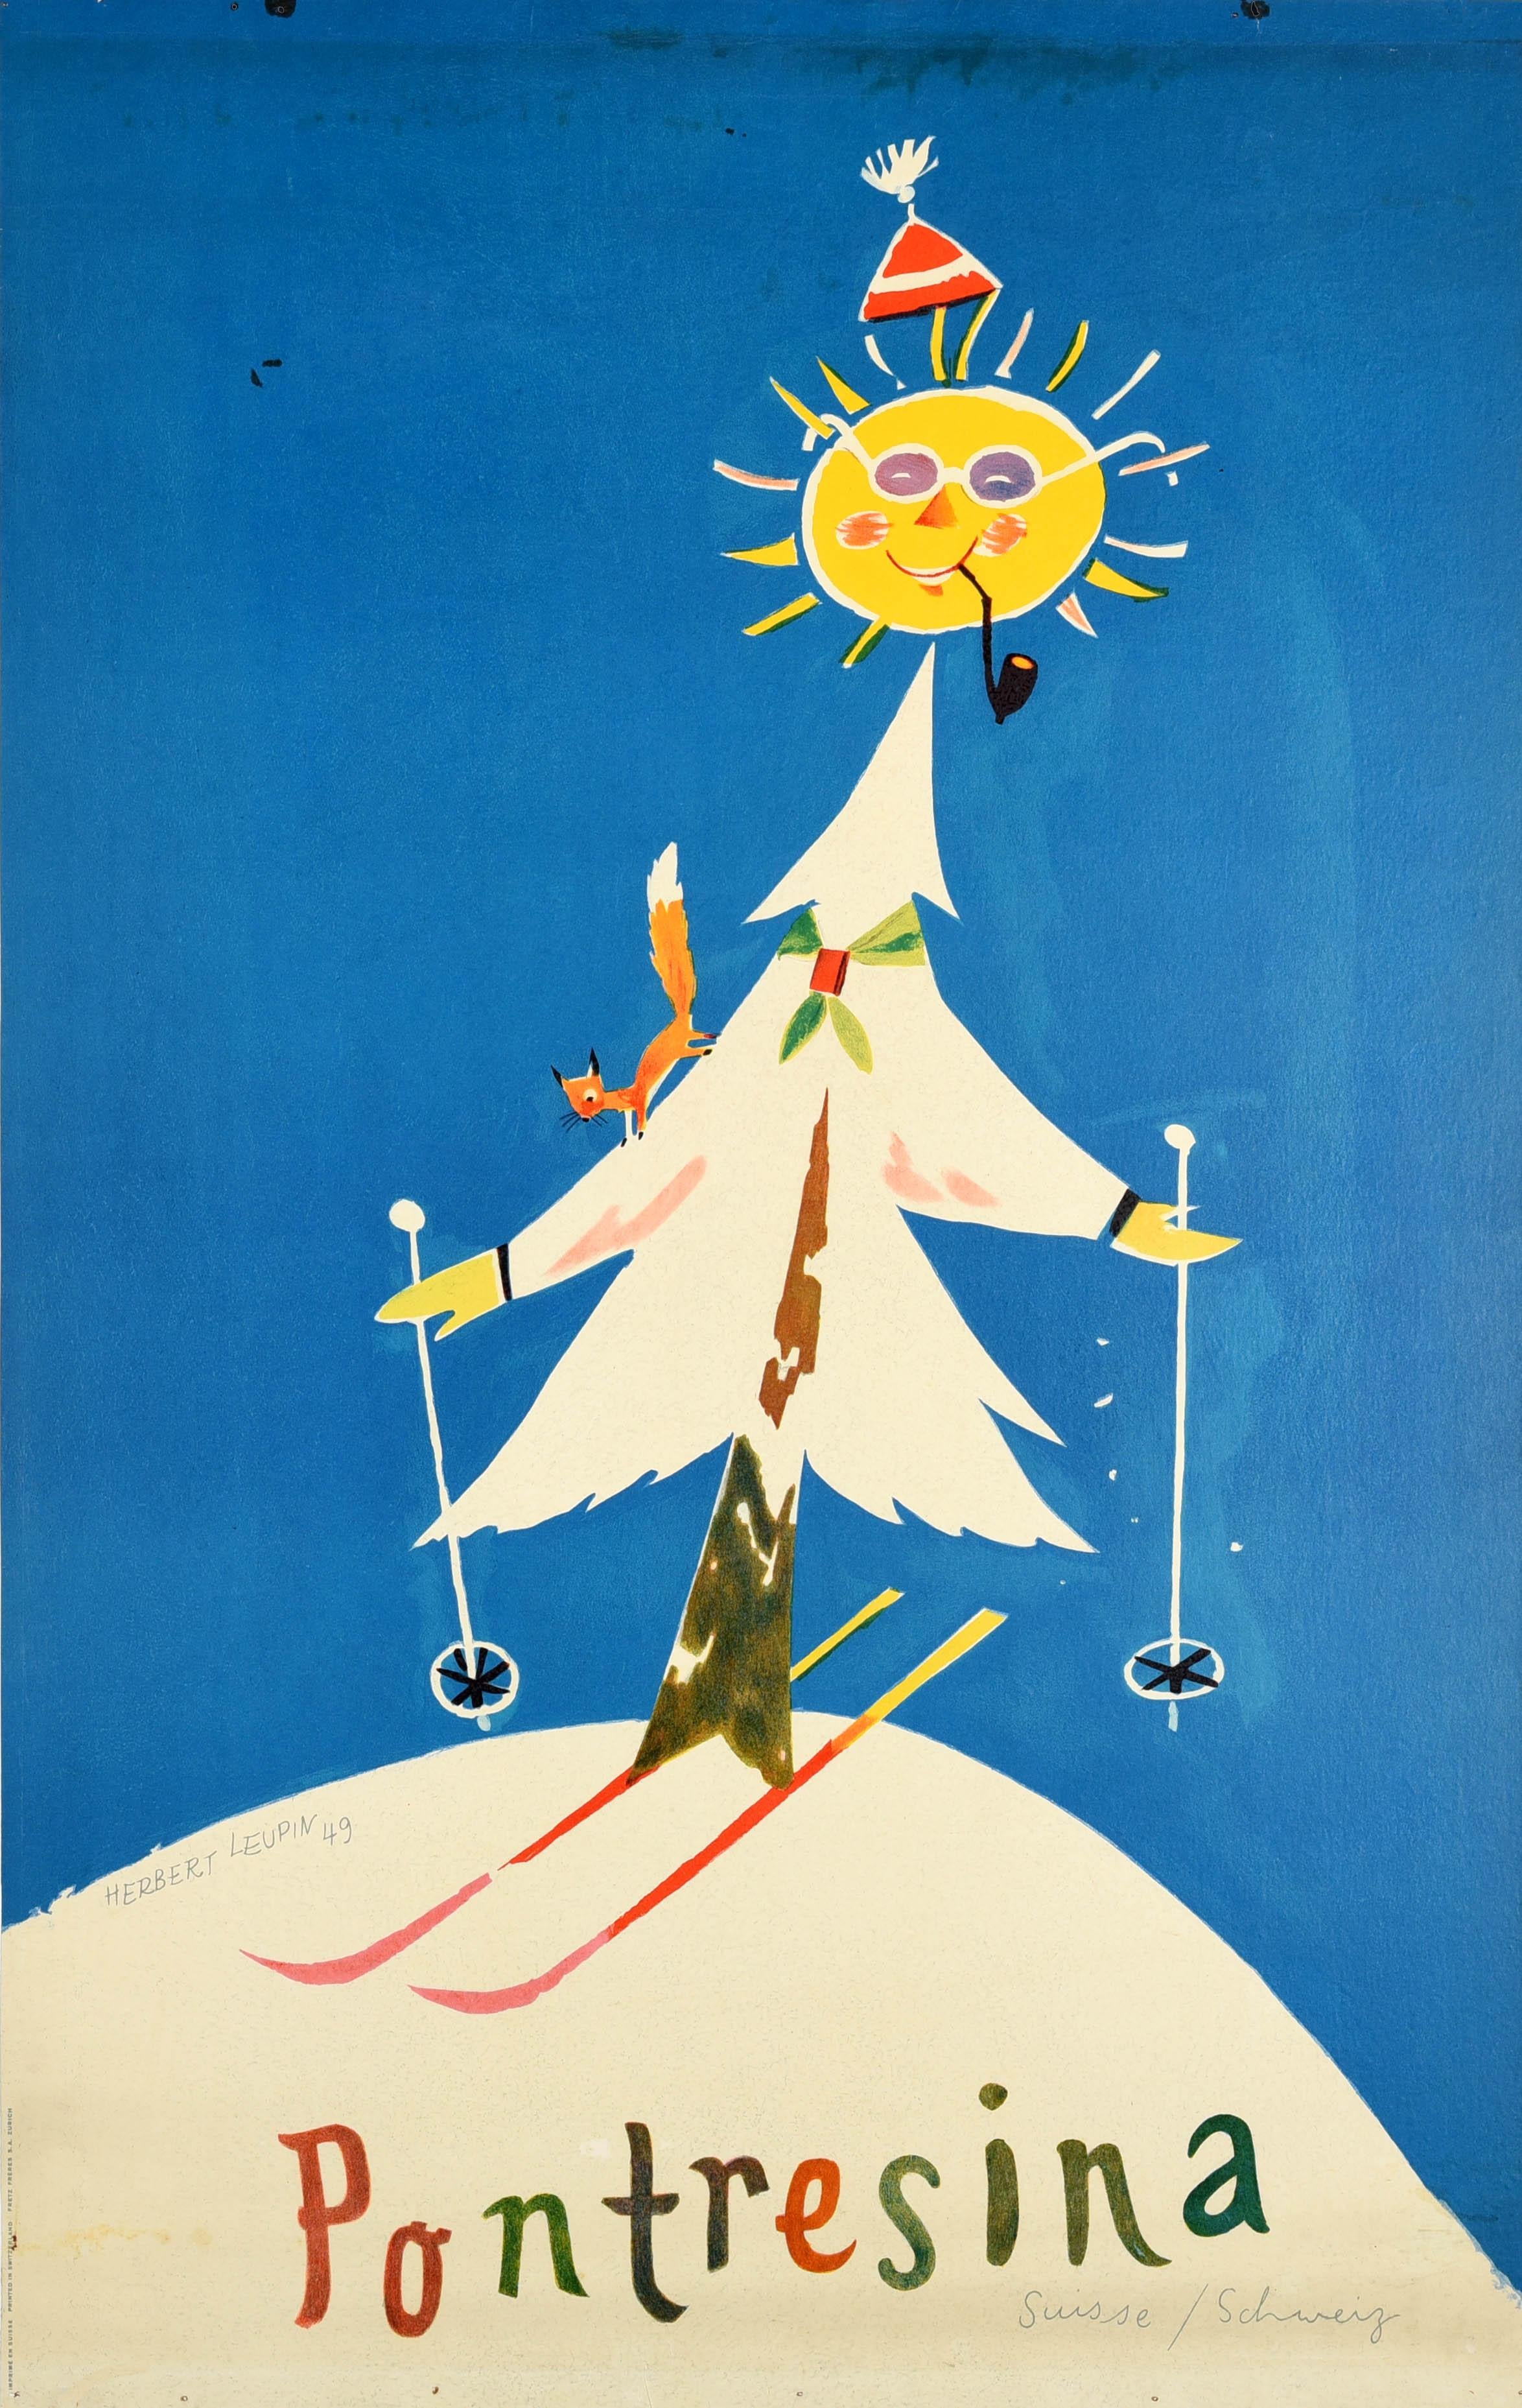 Print Herbert Leupin - Affiche vintage d'origine de sports d'hiver vintage pour les stations de ski de Pontresina en Suisse, Leupin